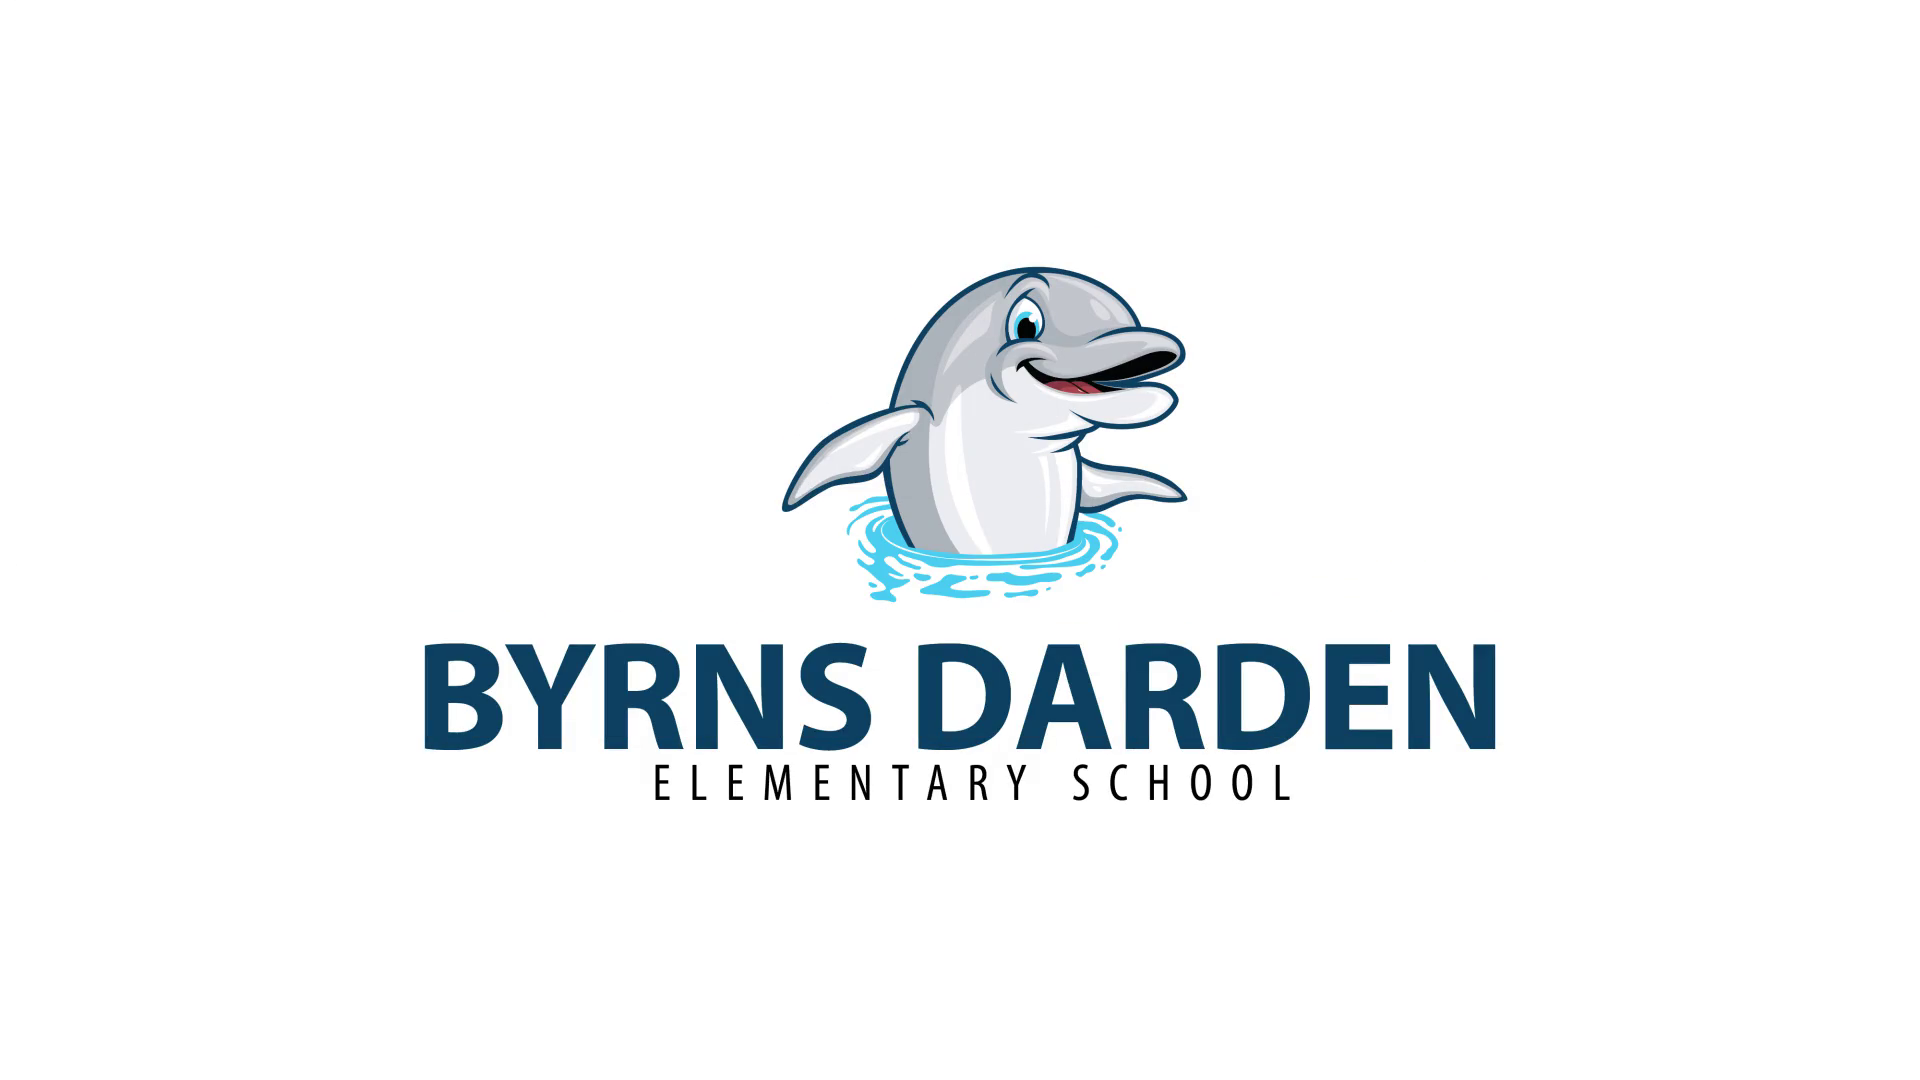 Byrns Darden Elementary School